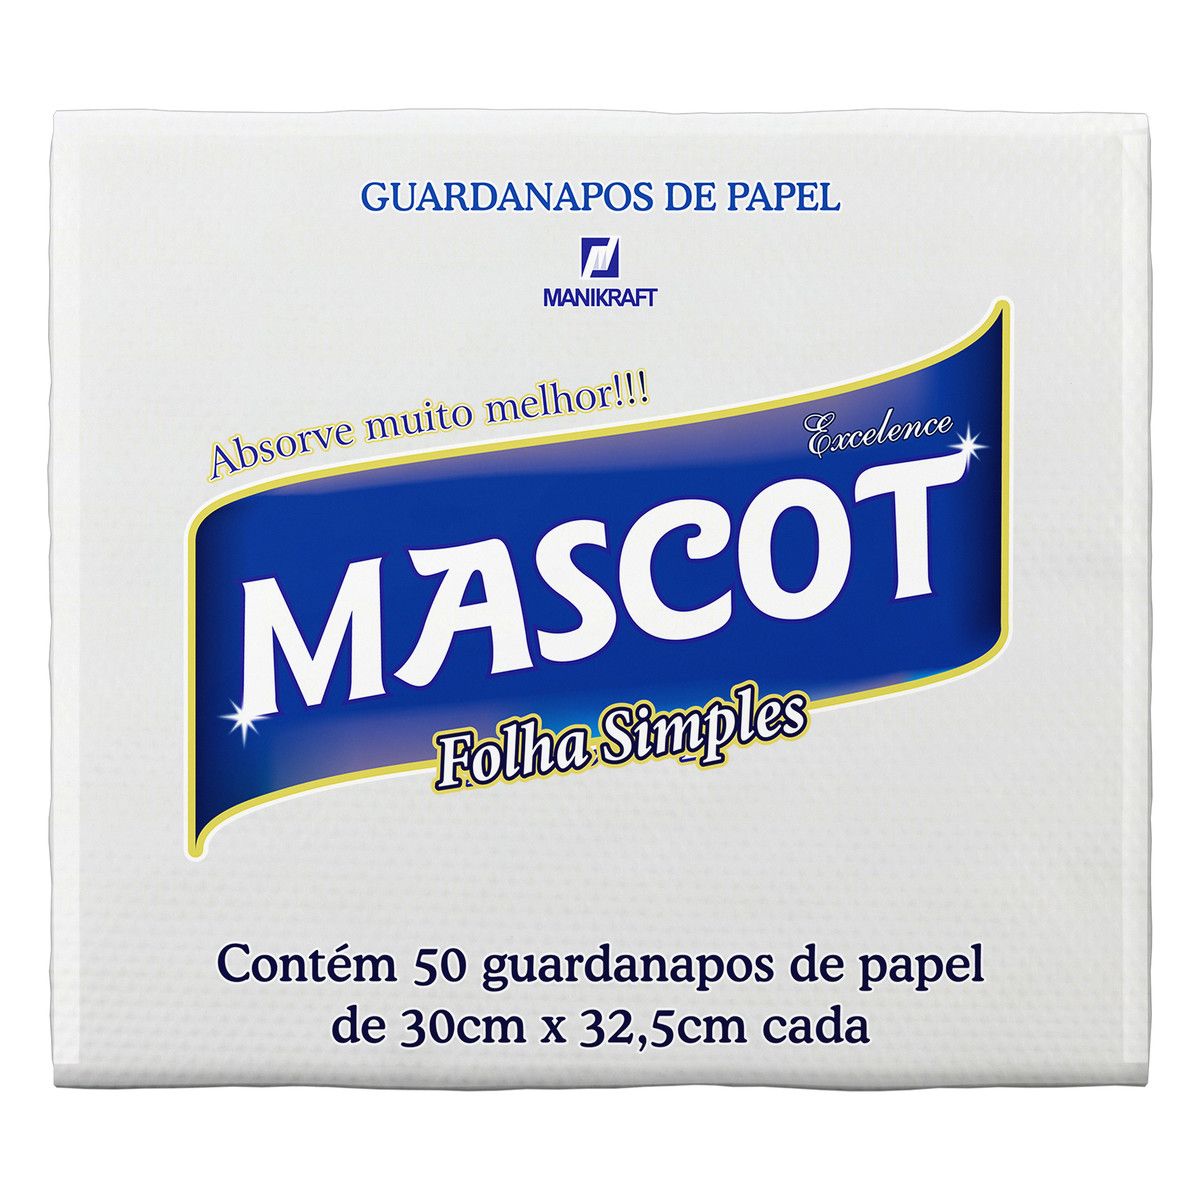 Guardanapo de Papel Folha Simples Mascot Excelence 30cm x 32,5cm Pacote 50 Unidades image number 0